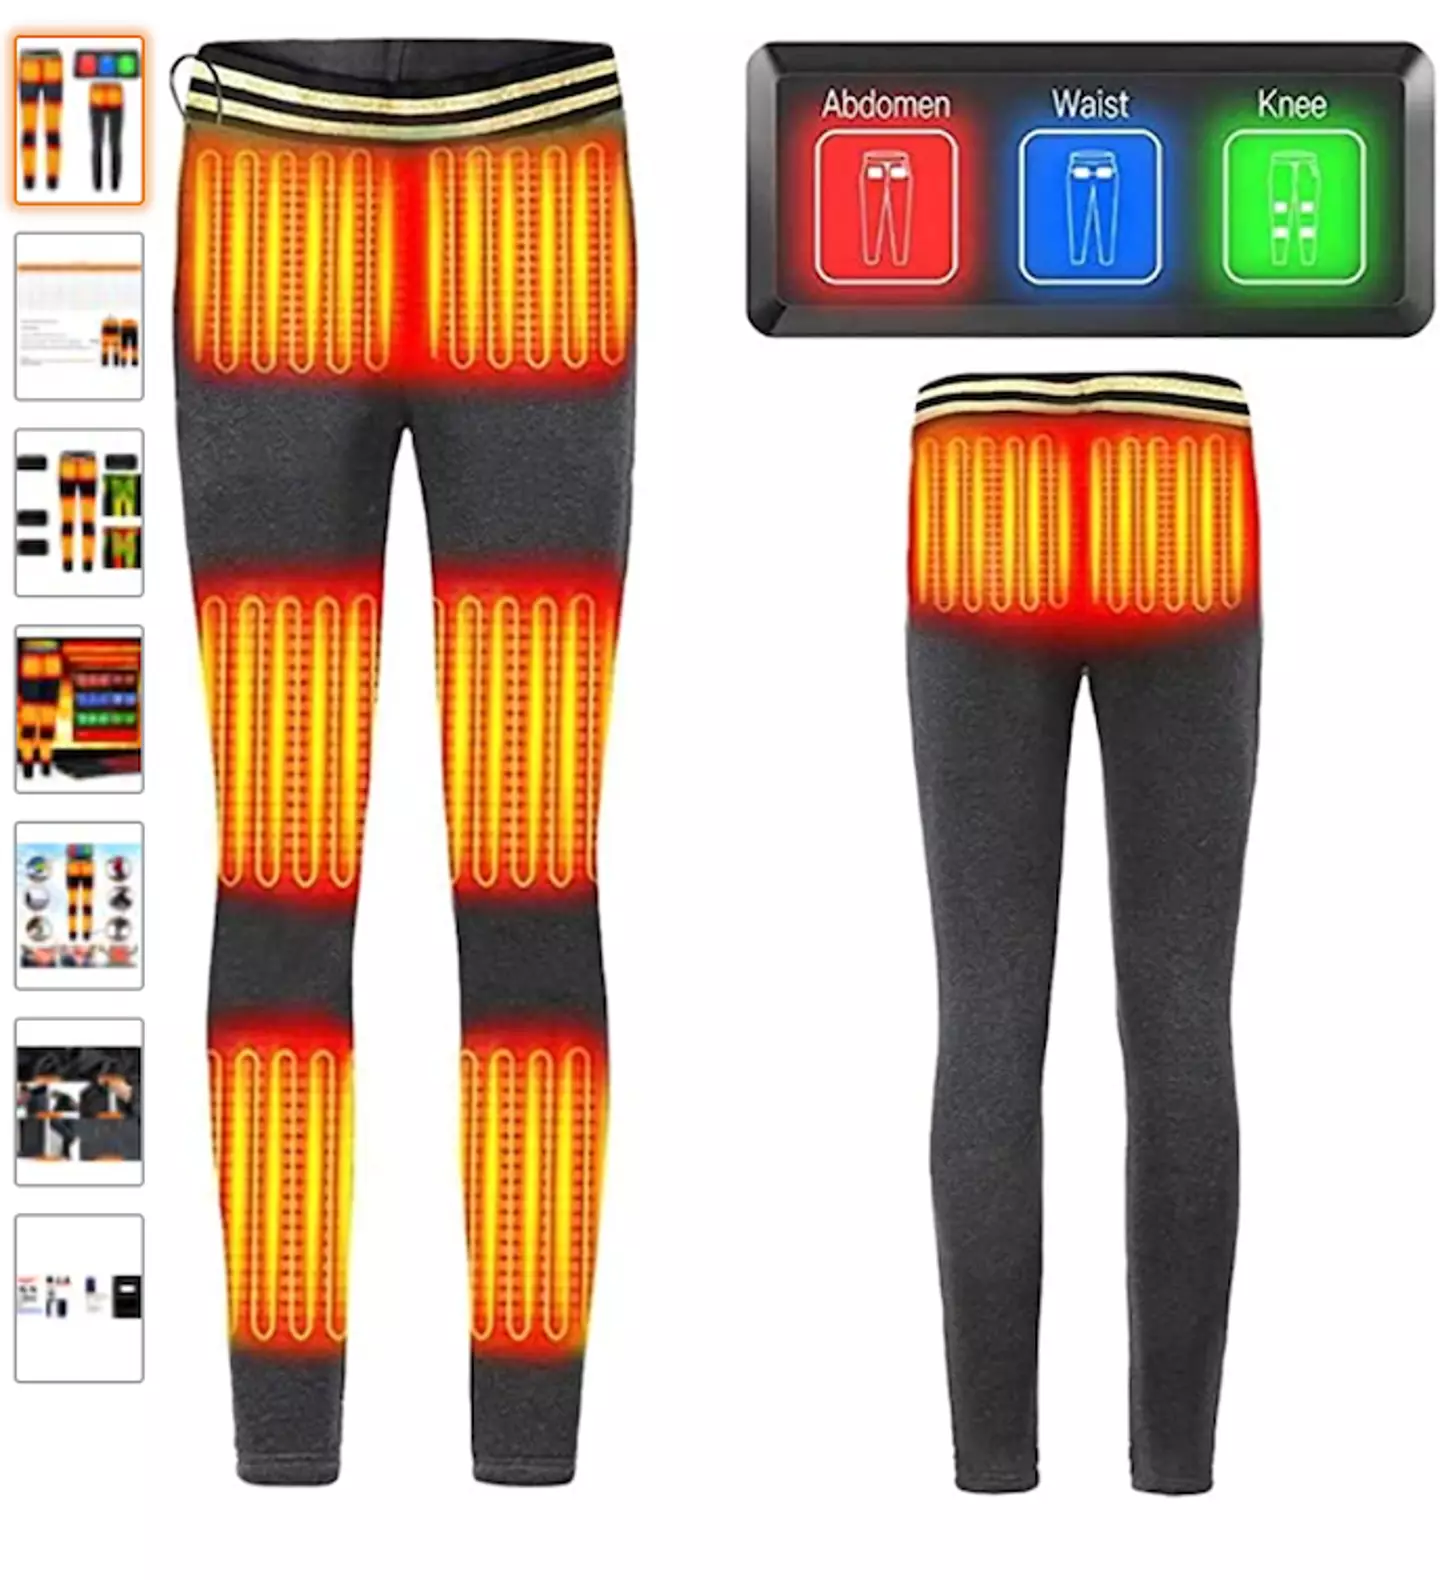 These heated leggings are genius! (